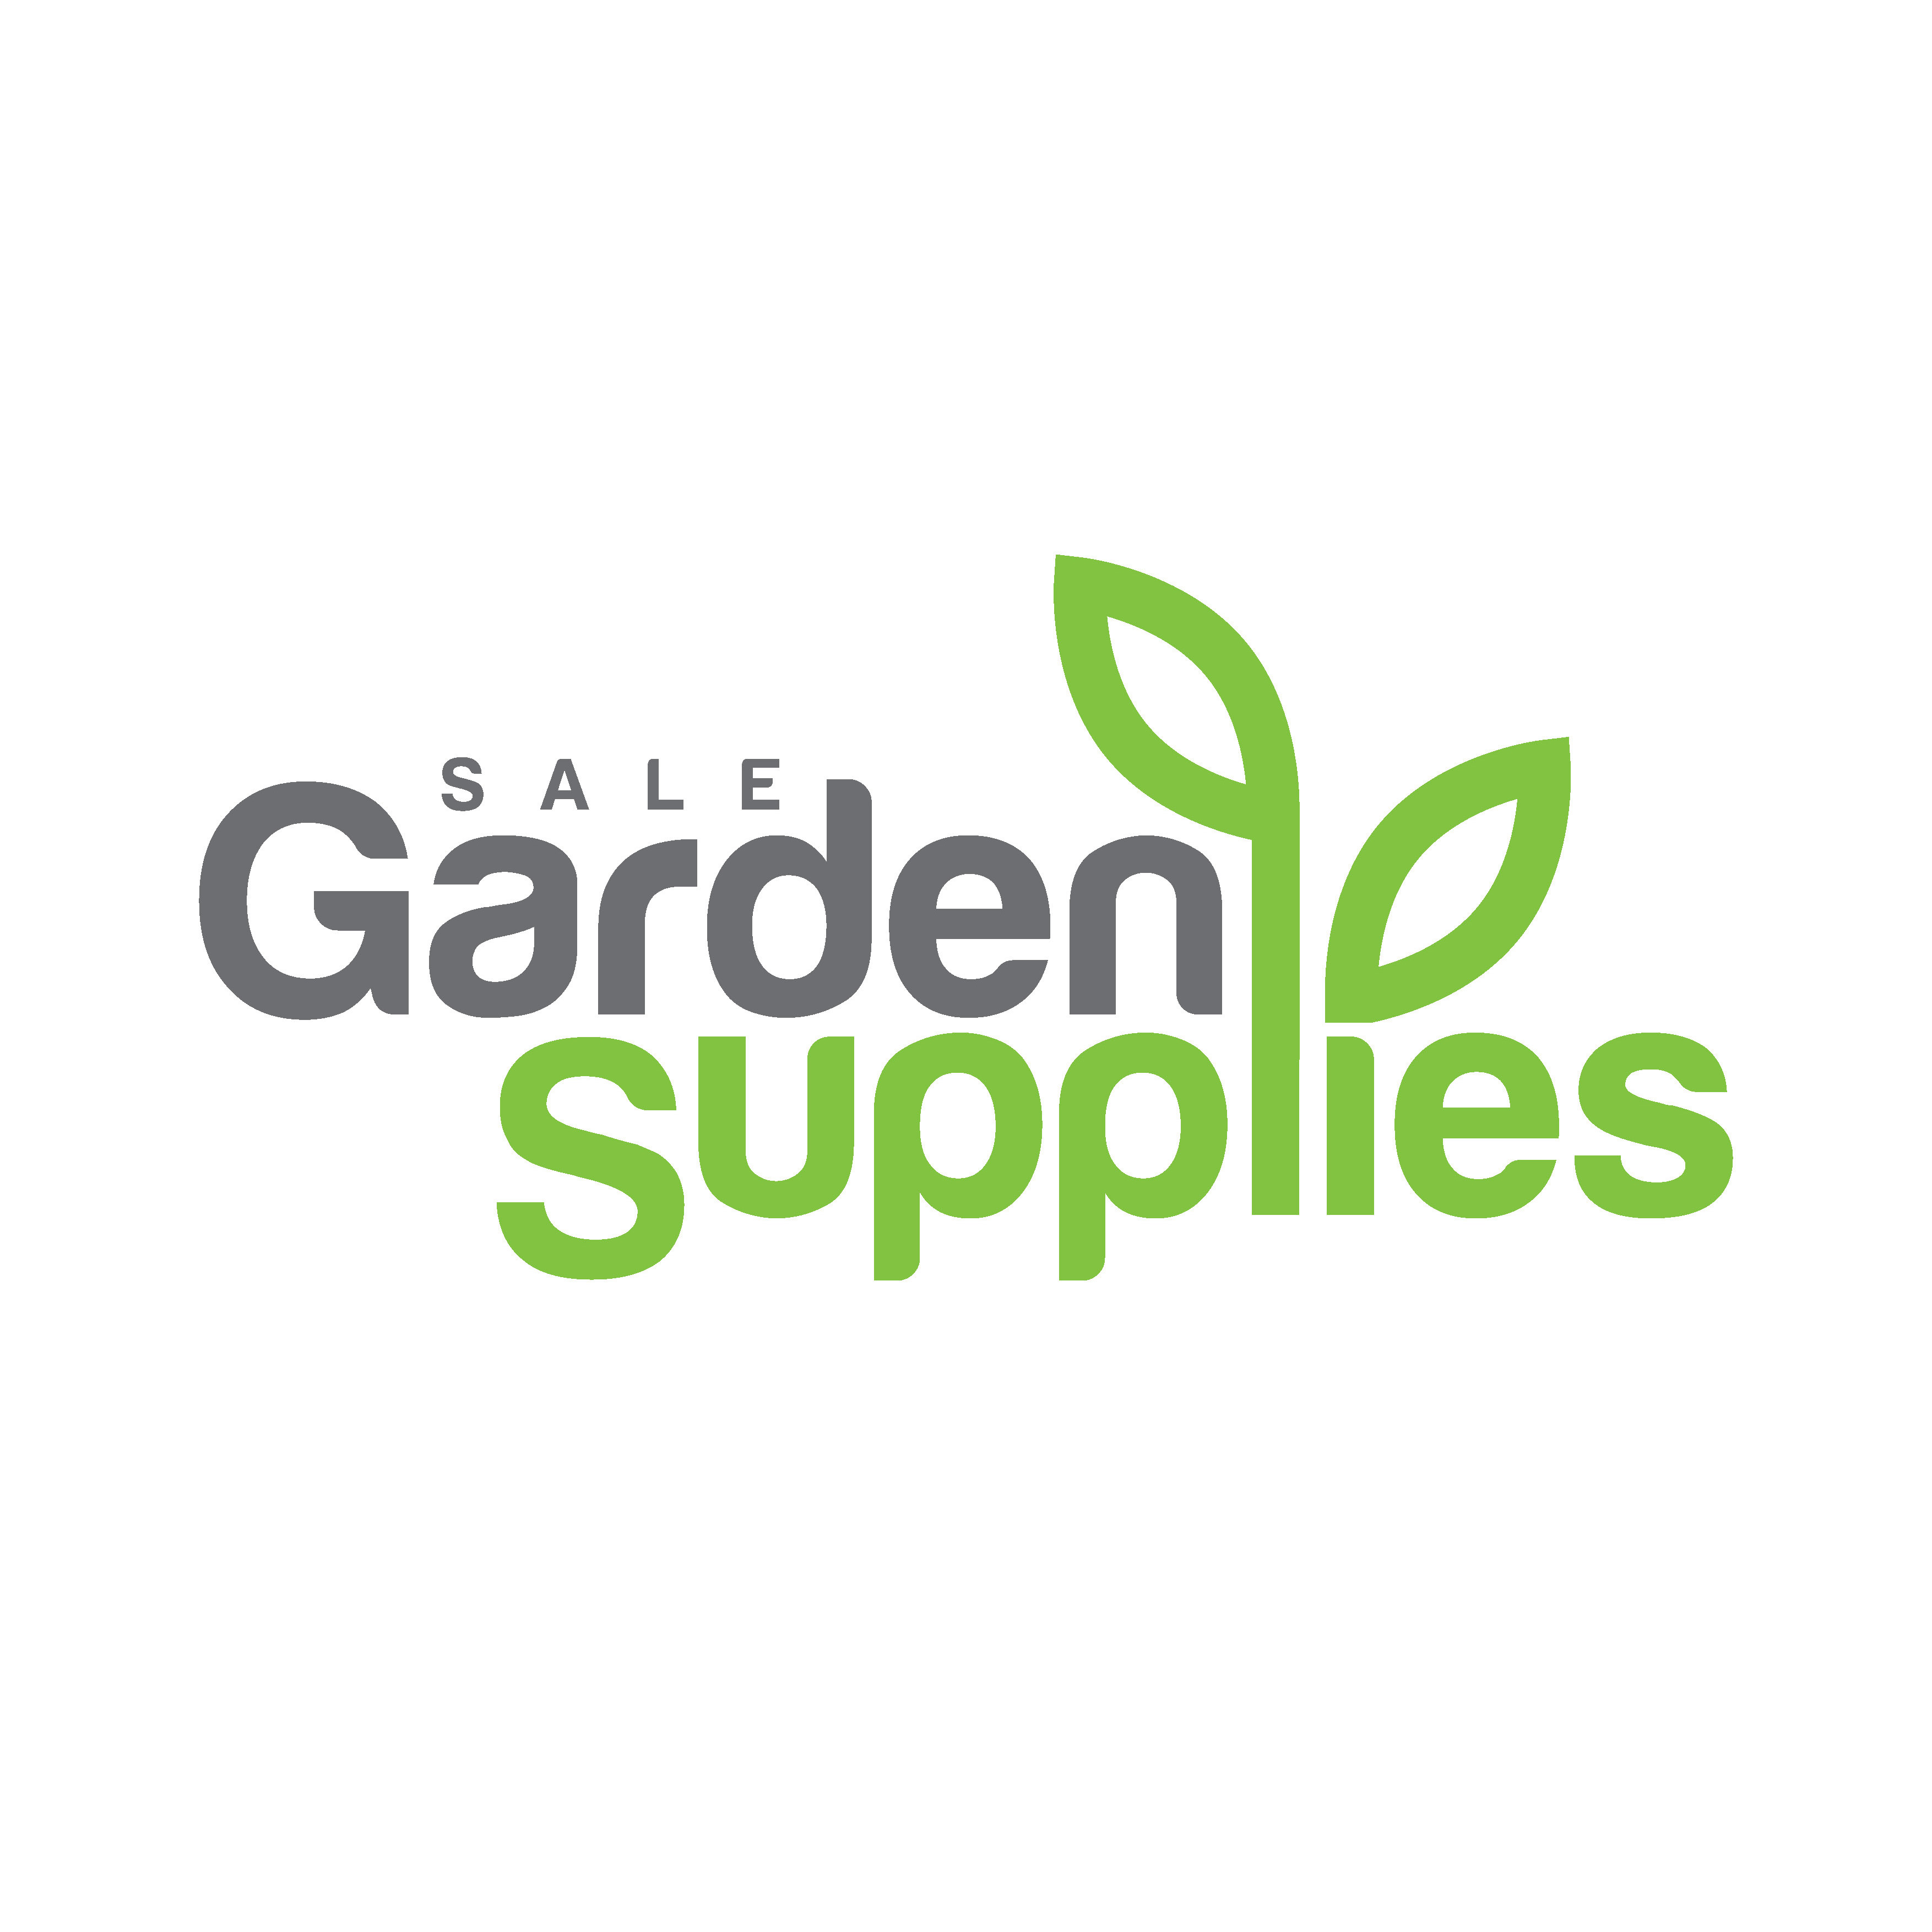 Sale Garden Supplies & Mini-Mix Concrete - Sale, VIC 3850 - (03) 5144 4800 | ShowMeLocal.com